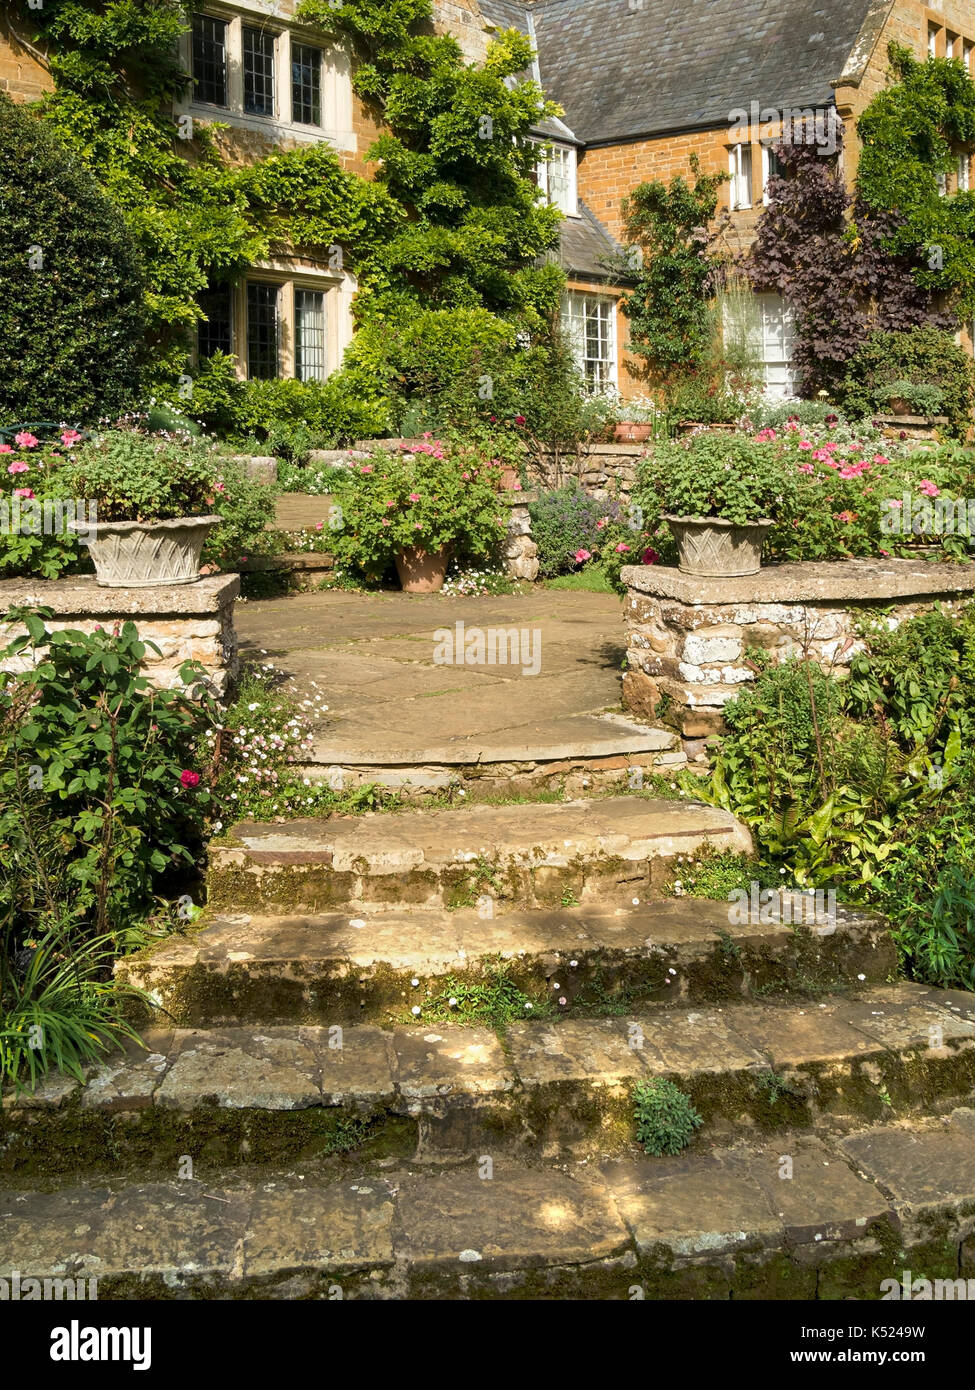 Jardin de pierres étapes coton manor gardens, Northamptonshire, England, UK Banque D'Images